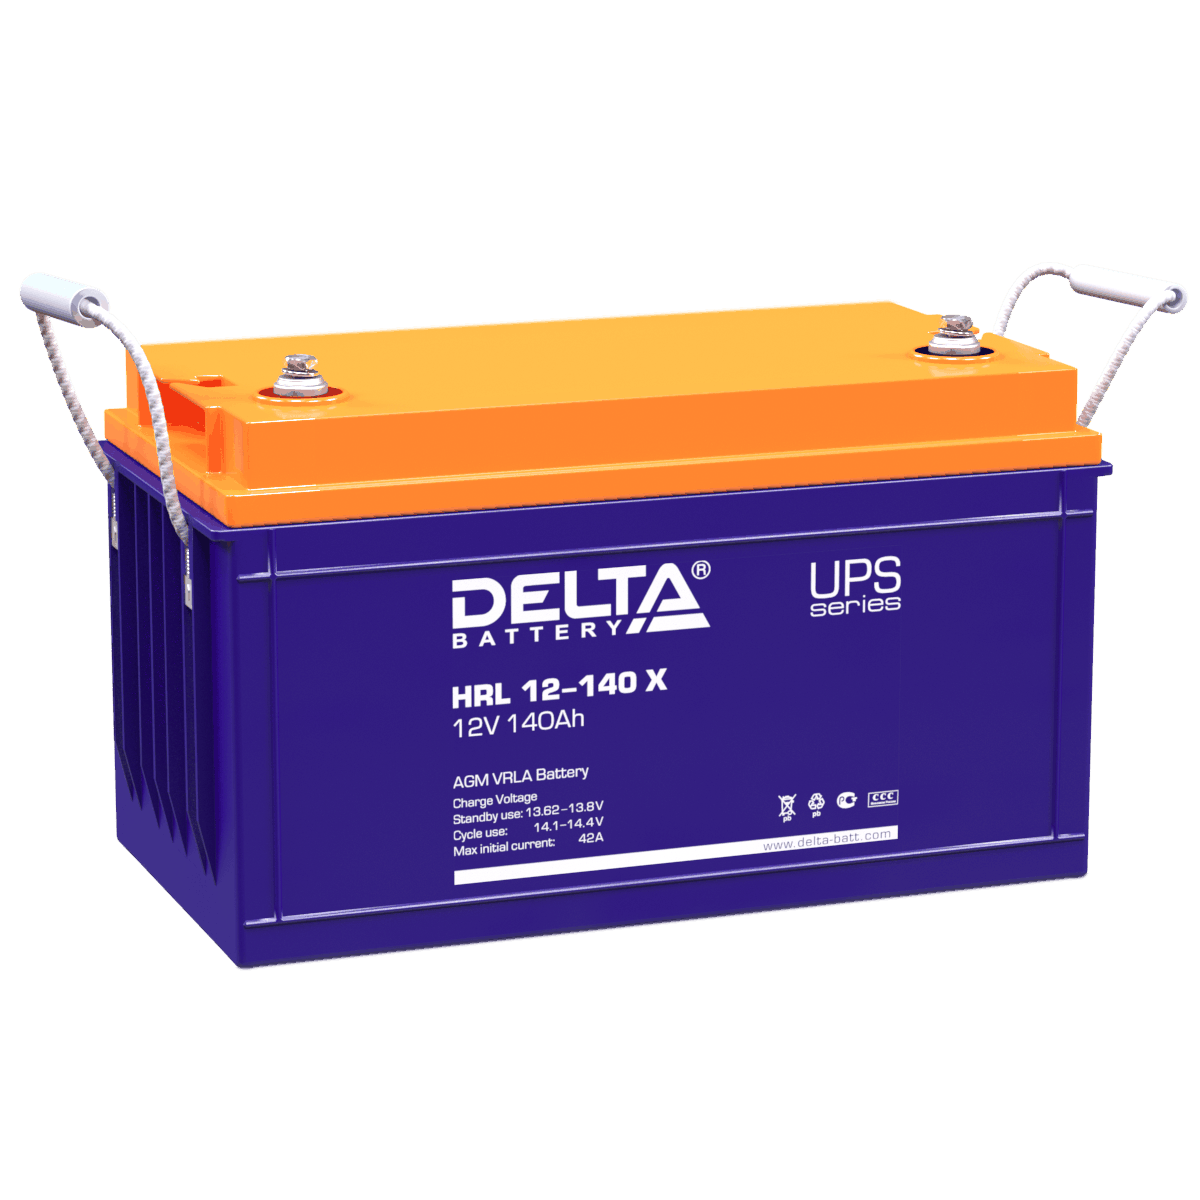 Все Батареи DELTA HRL 12-140 X видеонаблюдения в магазине Vidos Group